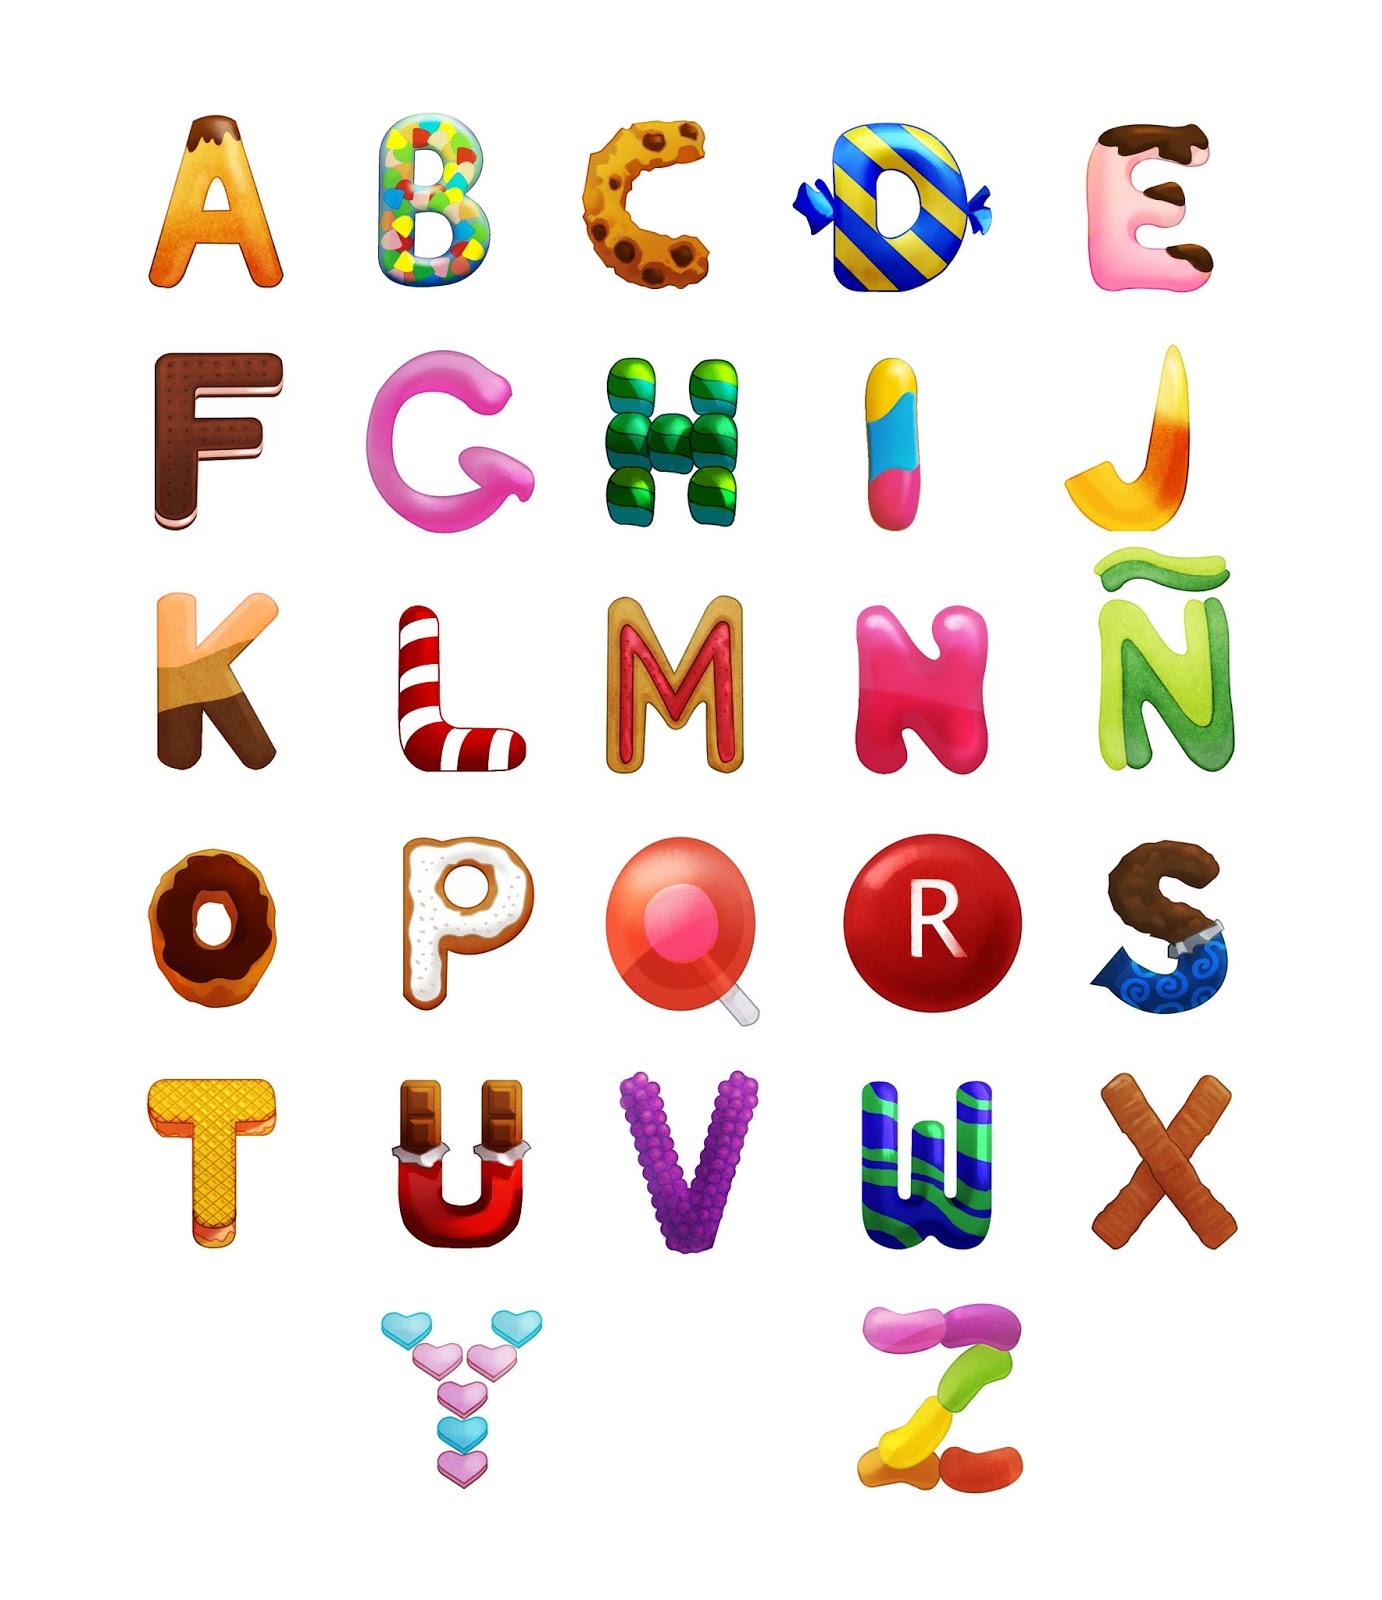 Verwonderend Op avontuur met 3J: Het alfabet leren. OR-48